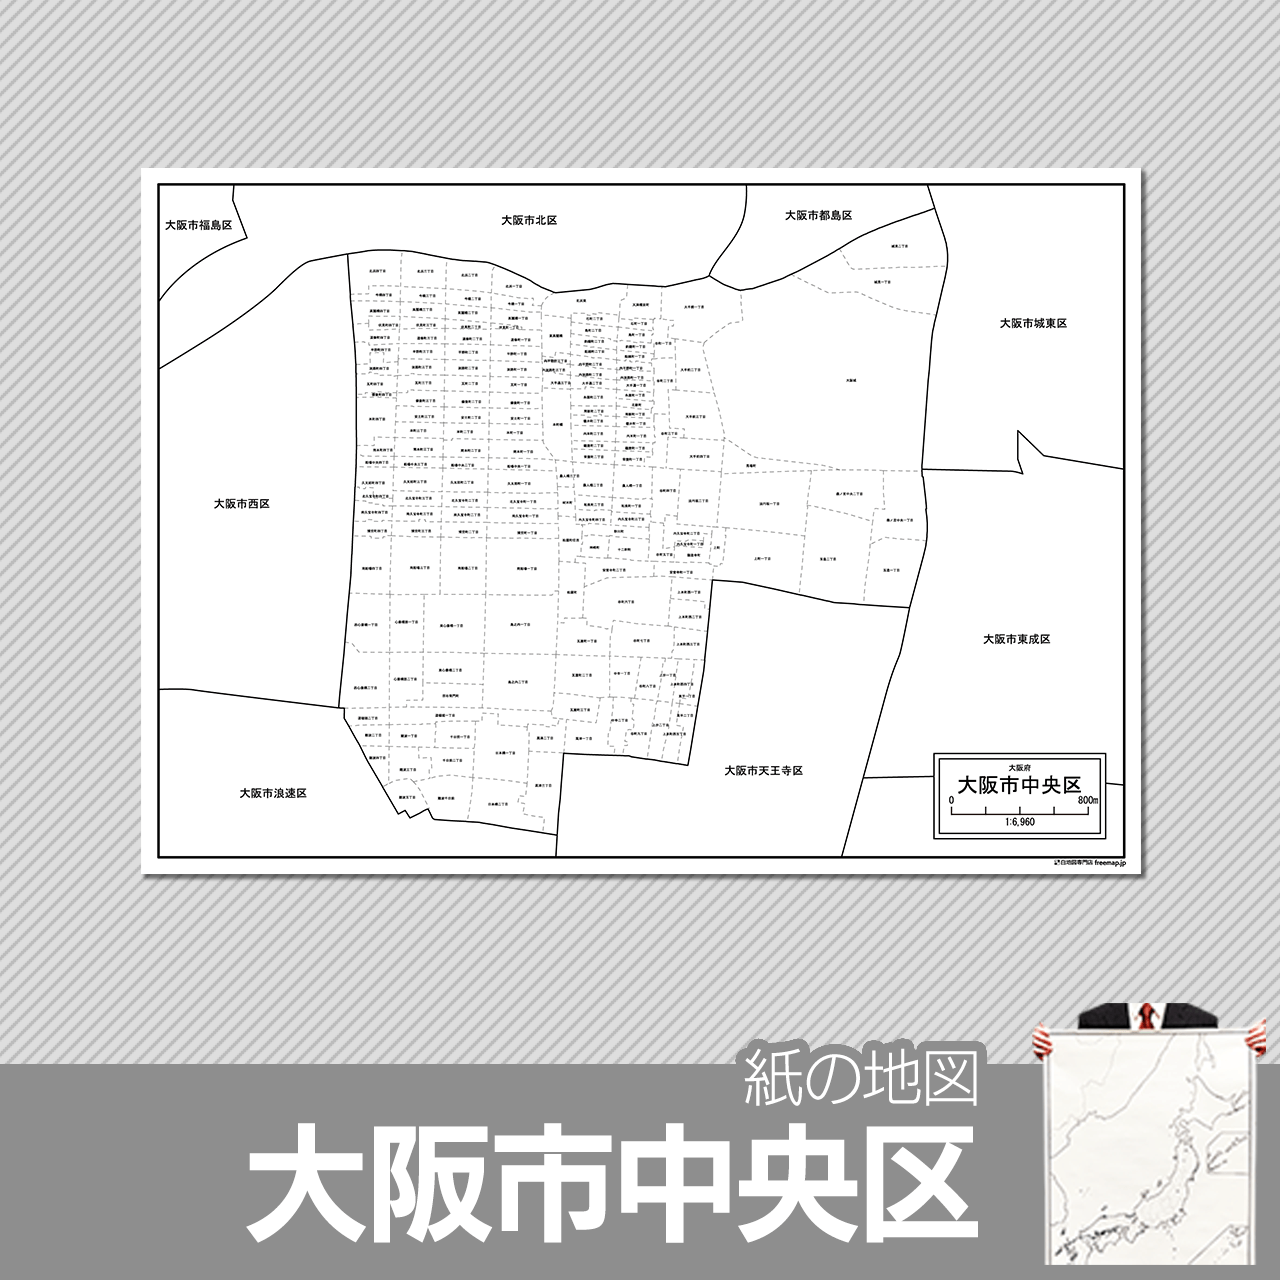 大阪市中央区の紙の白地図のサムネイル